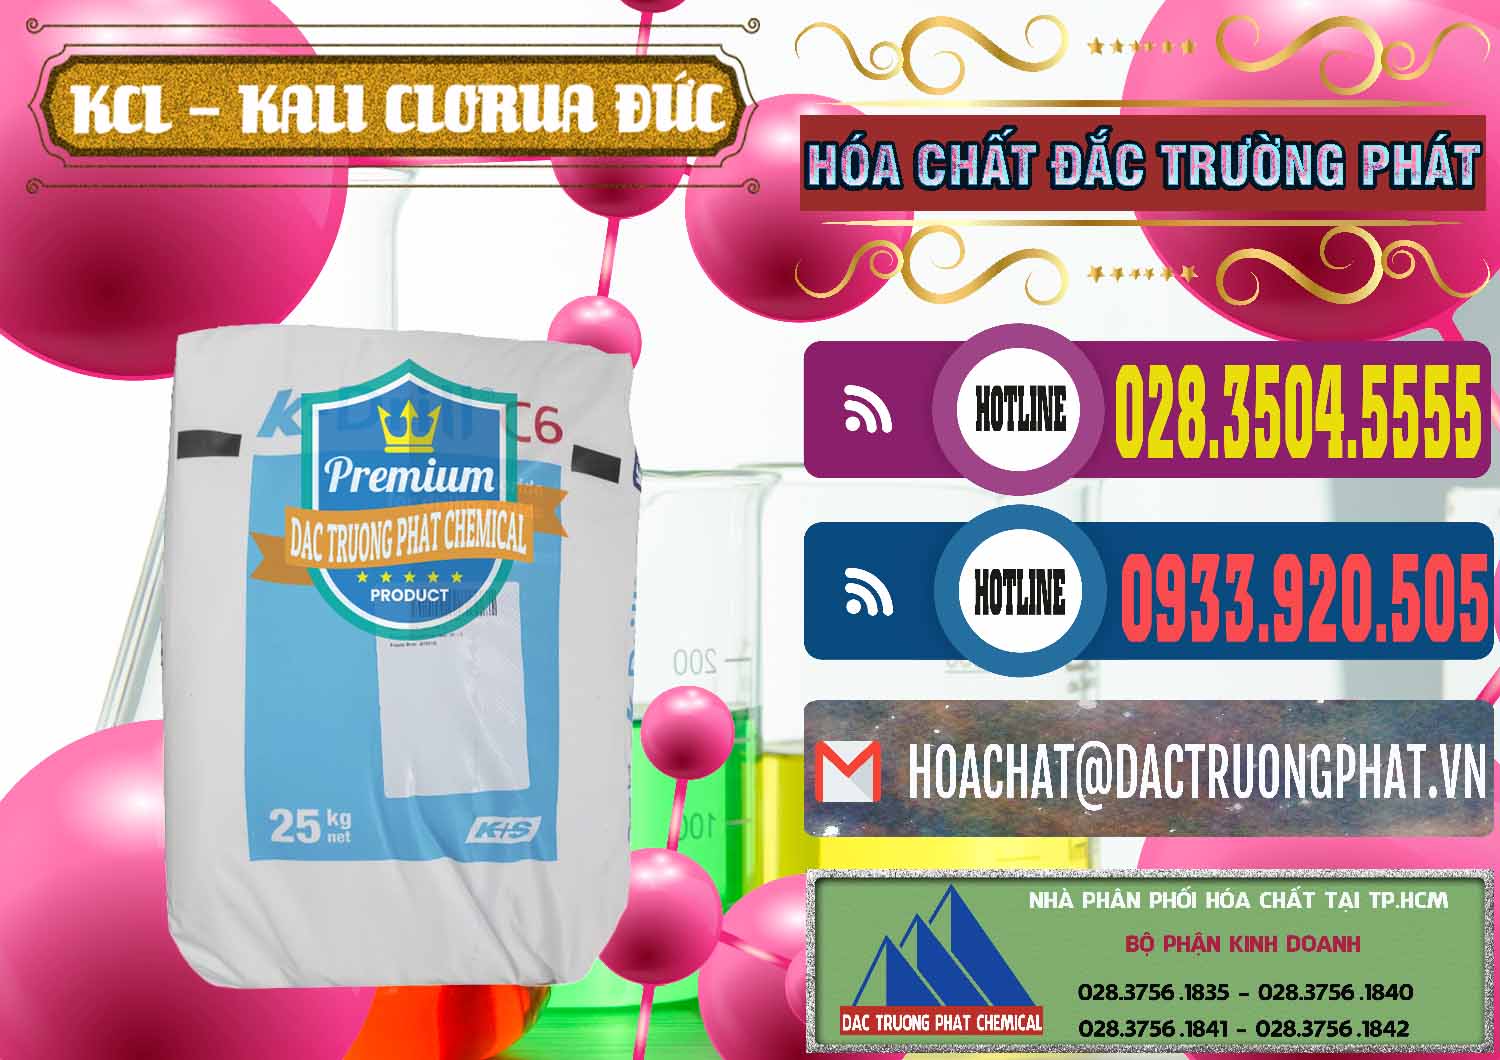 Chuyên bán ( phân phối ) KCL – Kali Clorua Trắng K DRILL Đức Germany - 0428 - Cty chuyên cung cấp và kinh doanh hóa chất tại TP.HCM - muabanhoachat.com.vn